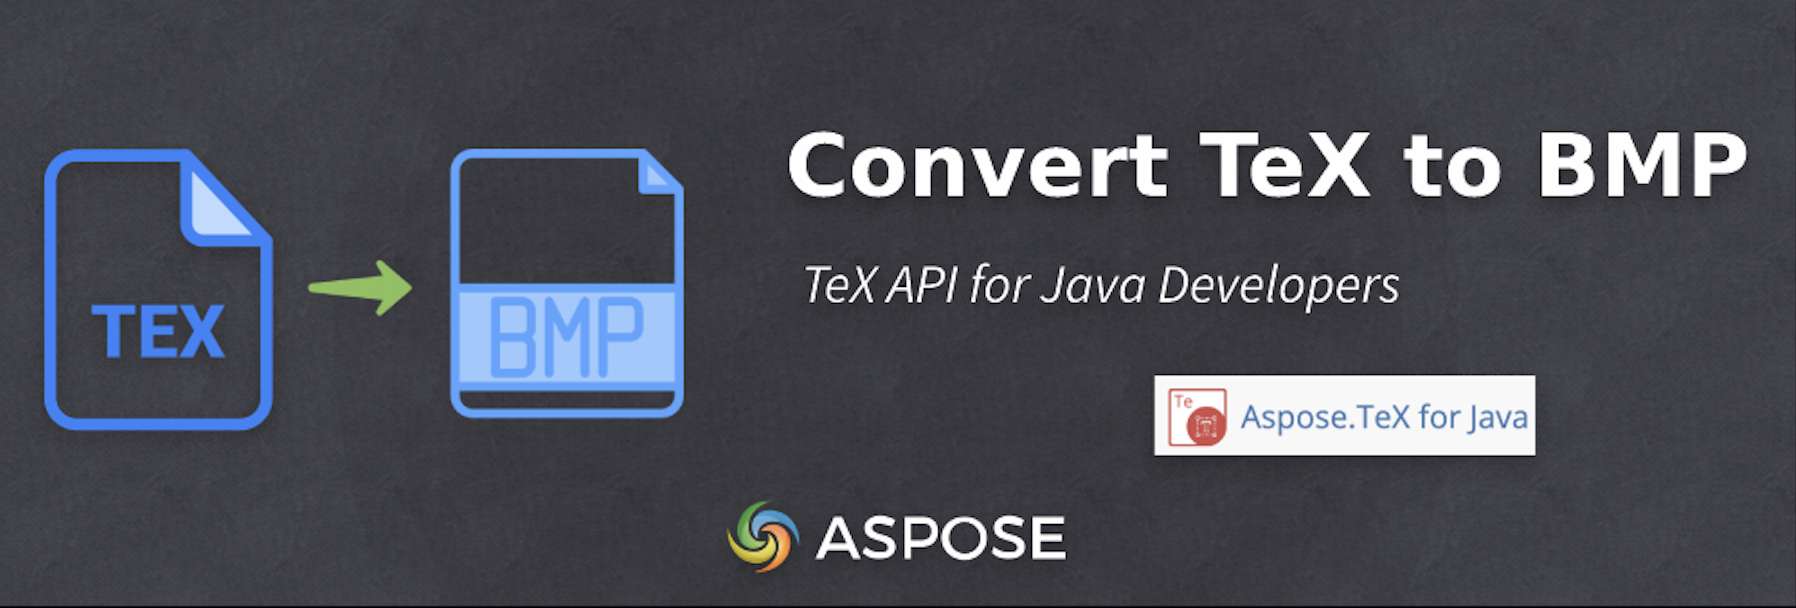 Converti TeX in BMP - API TeX per sviluppatori Java